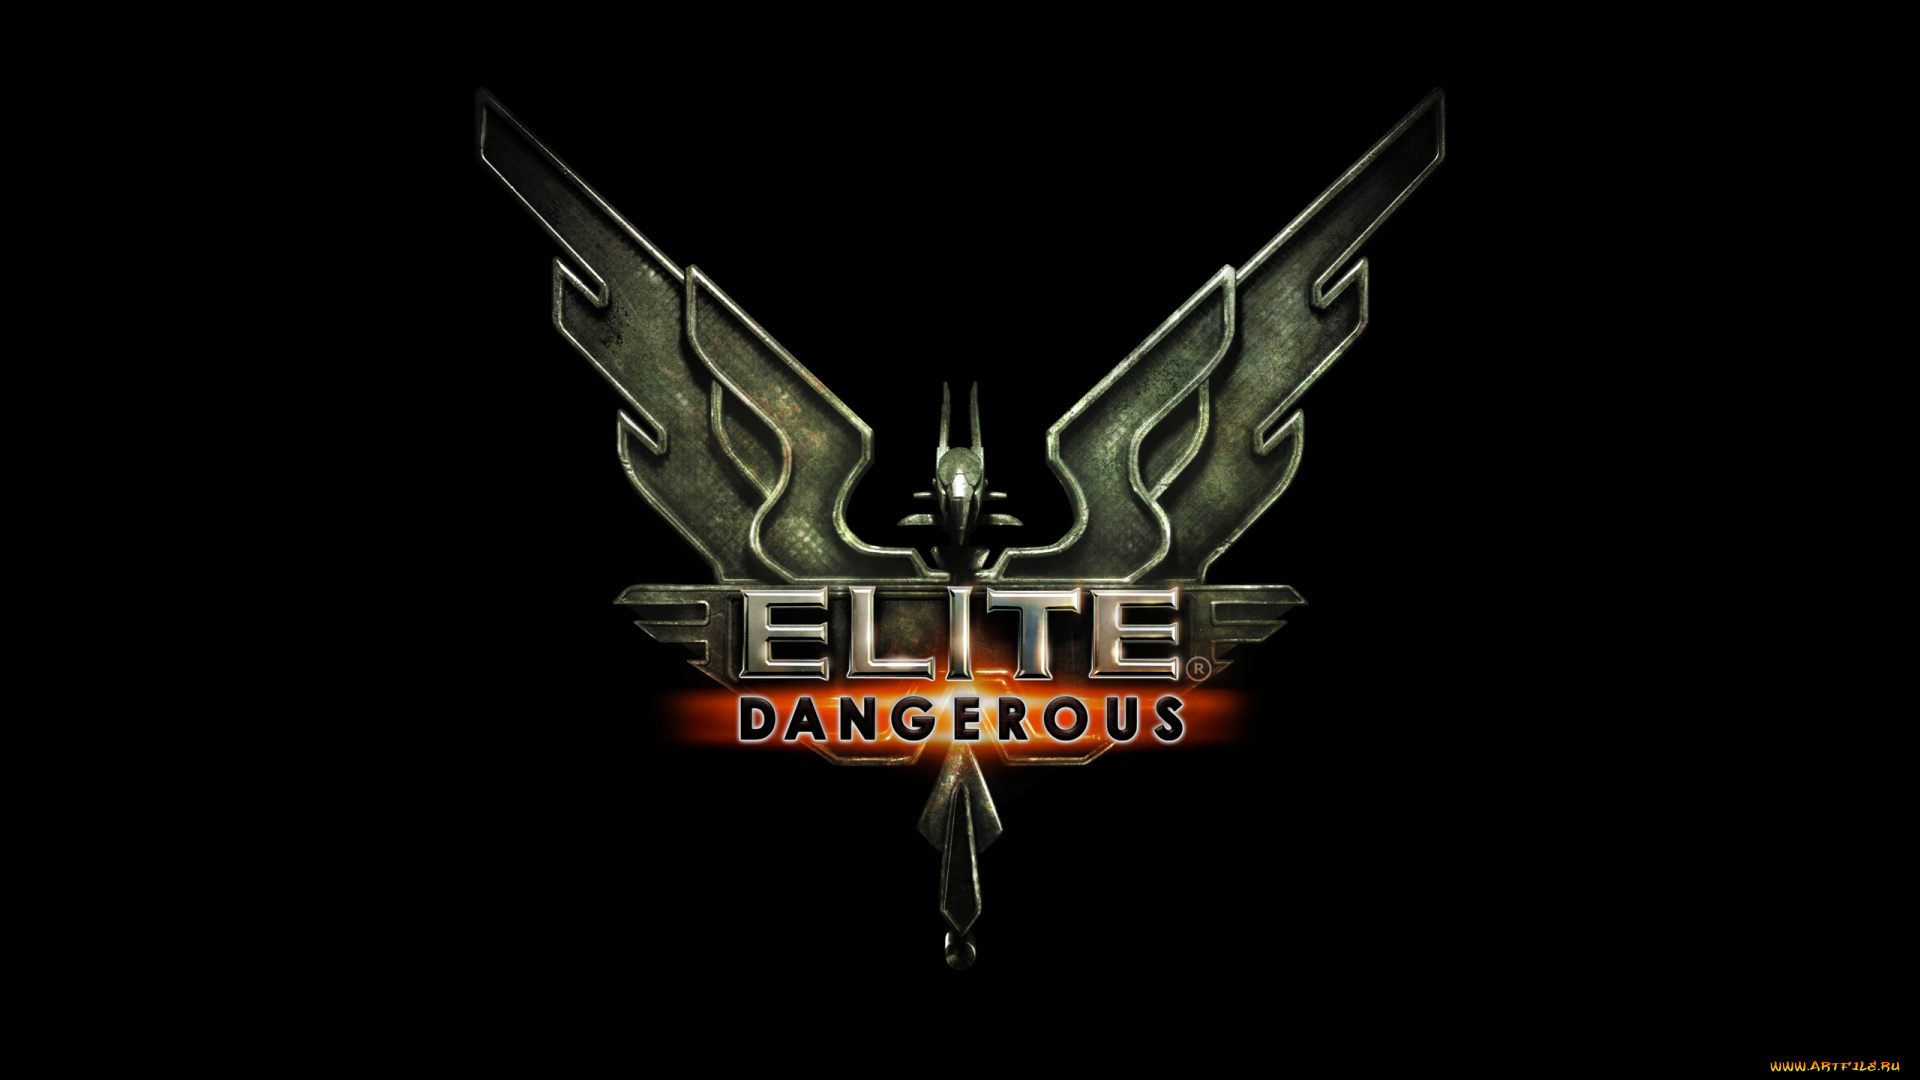 elite, dangerous, видео, игры, -, elite, , dangerous, ролевая, dangerous, elite, симулятор, космос, игра